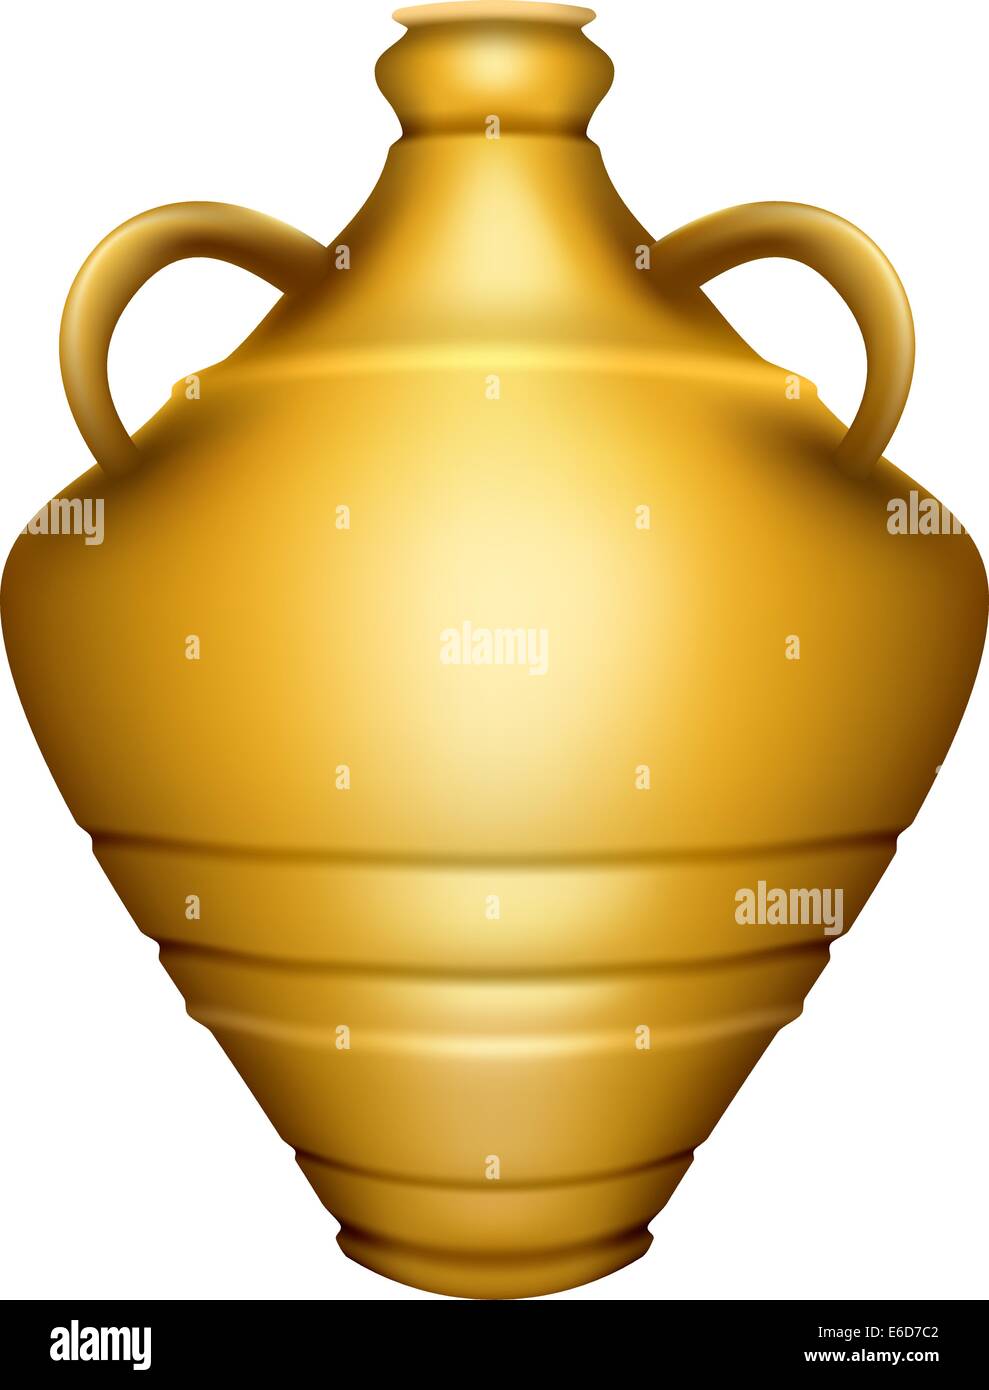 Bearbeitbares Vektor-Illustration von einer goldenen Urne mit Farbverlauf Maschen gemacht Stock Vektor